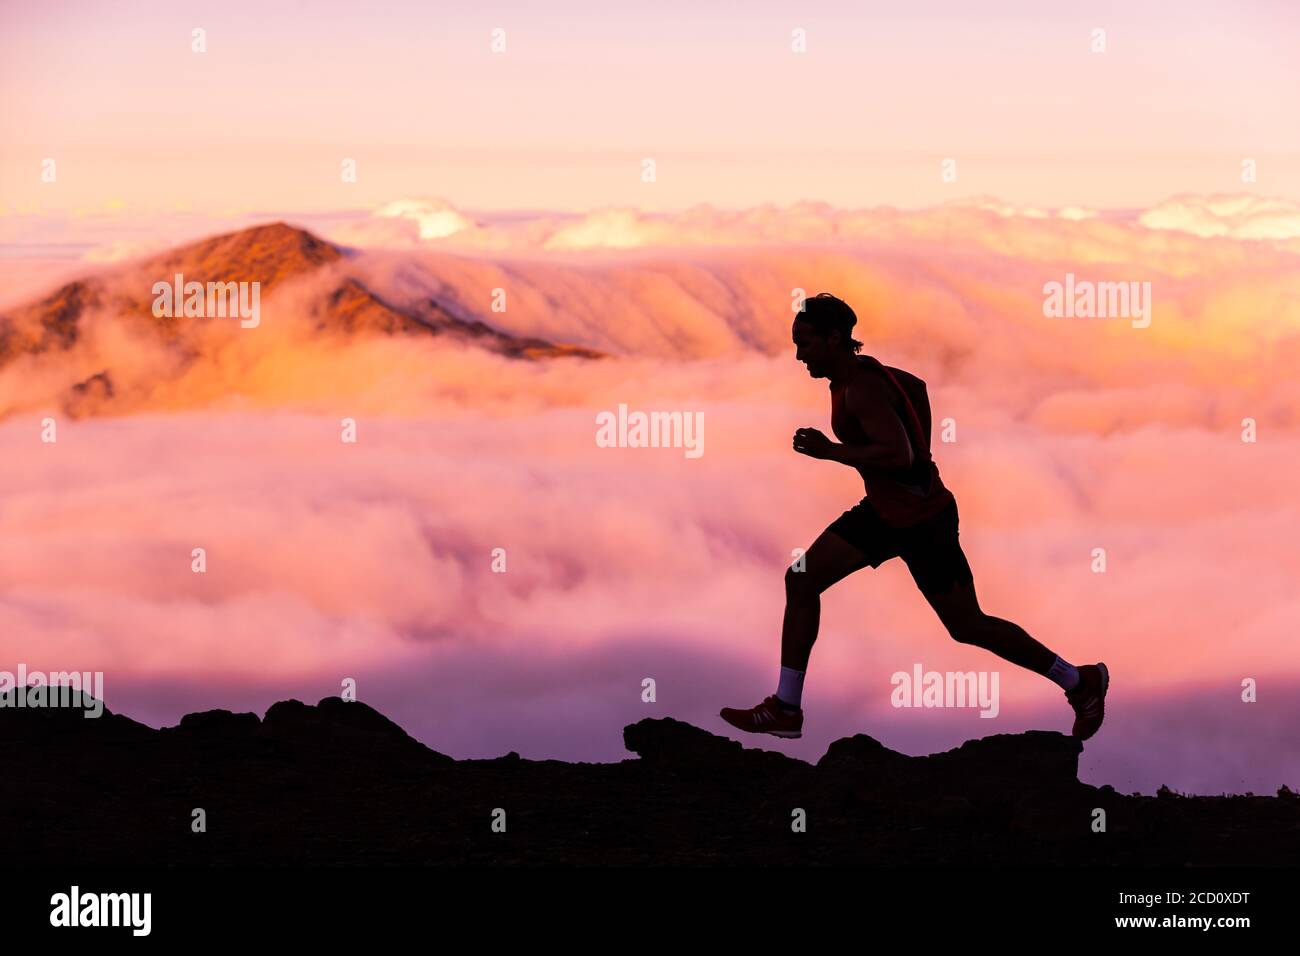 Trailrunner Athlet Mann Laufen in der Natur Landschaft. Silhouette des männlichen Menschen Training auf Bergen bei kaltem Wetter mit rosa Wolken bei Sonnenuntergang Stockfoto